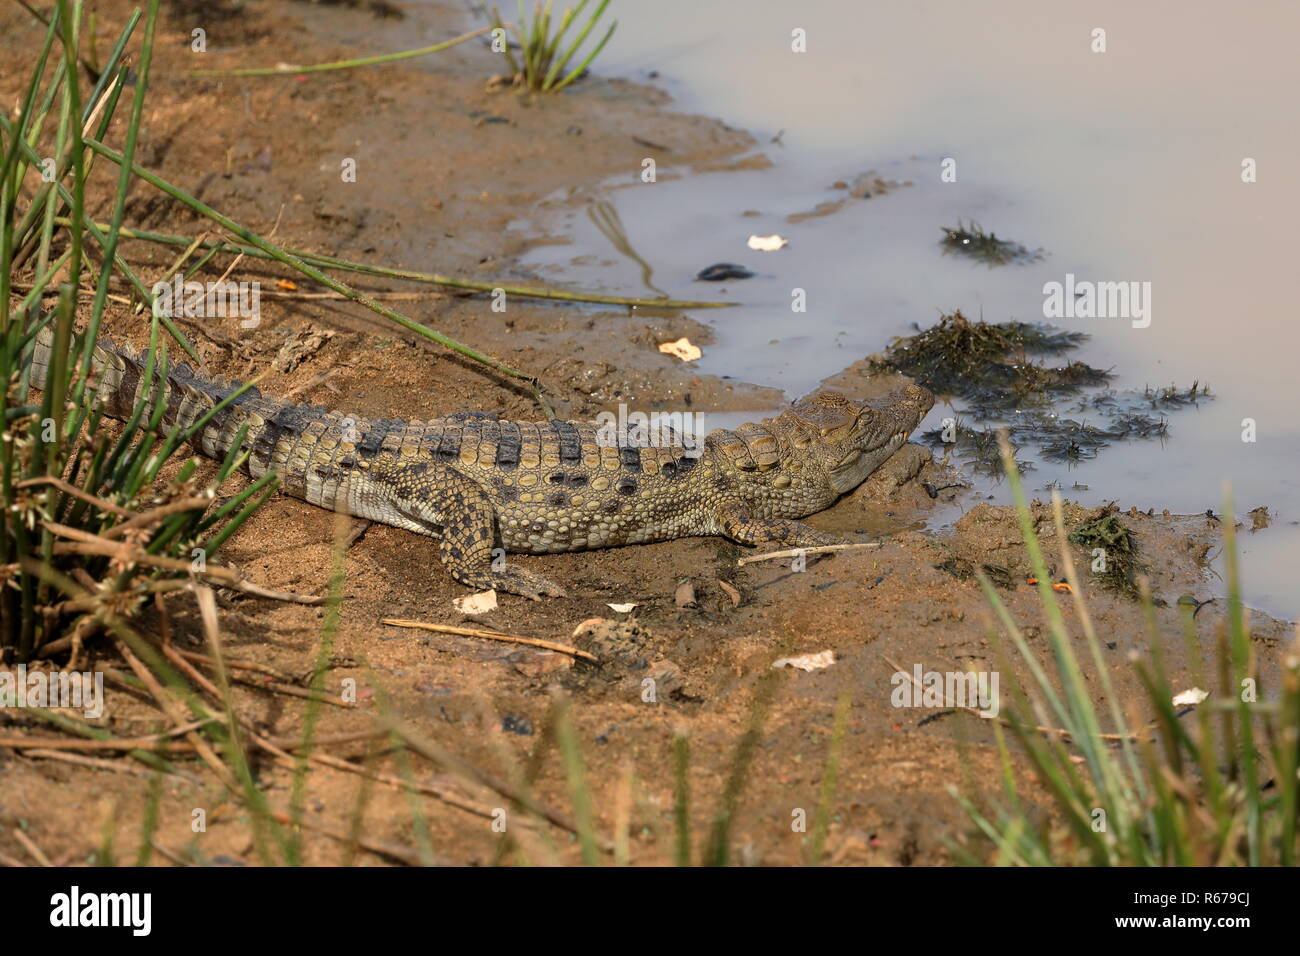 crocodiles in yala national park in sri lanka Stock Photo